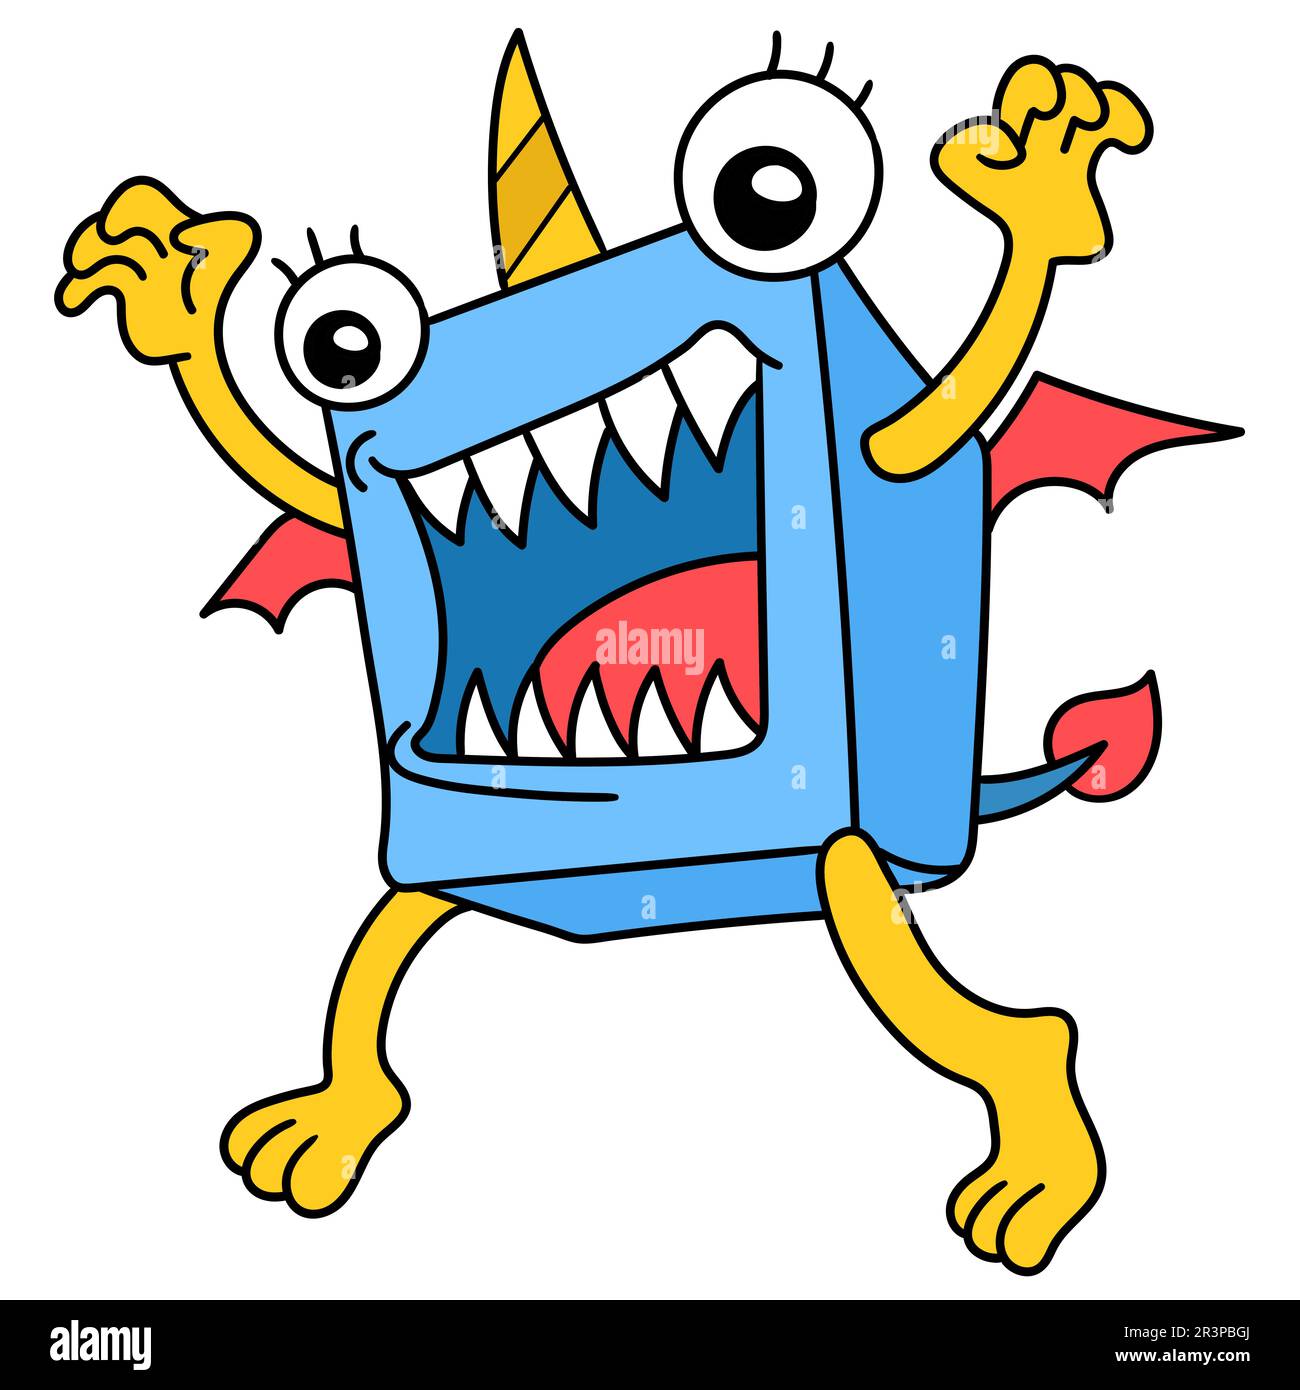 Un mostro boxy con denti affilati pronti a rimbalzare, doodle kawaii. immagine dell'icona di doodle Foto Stock